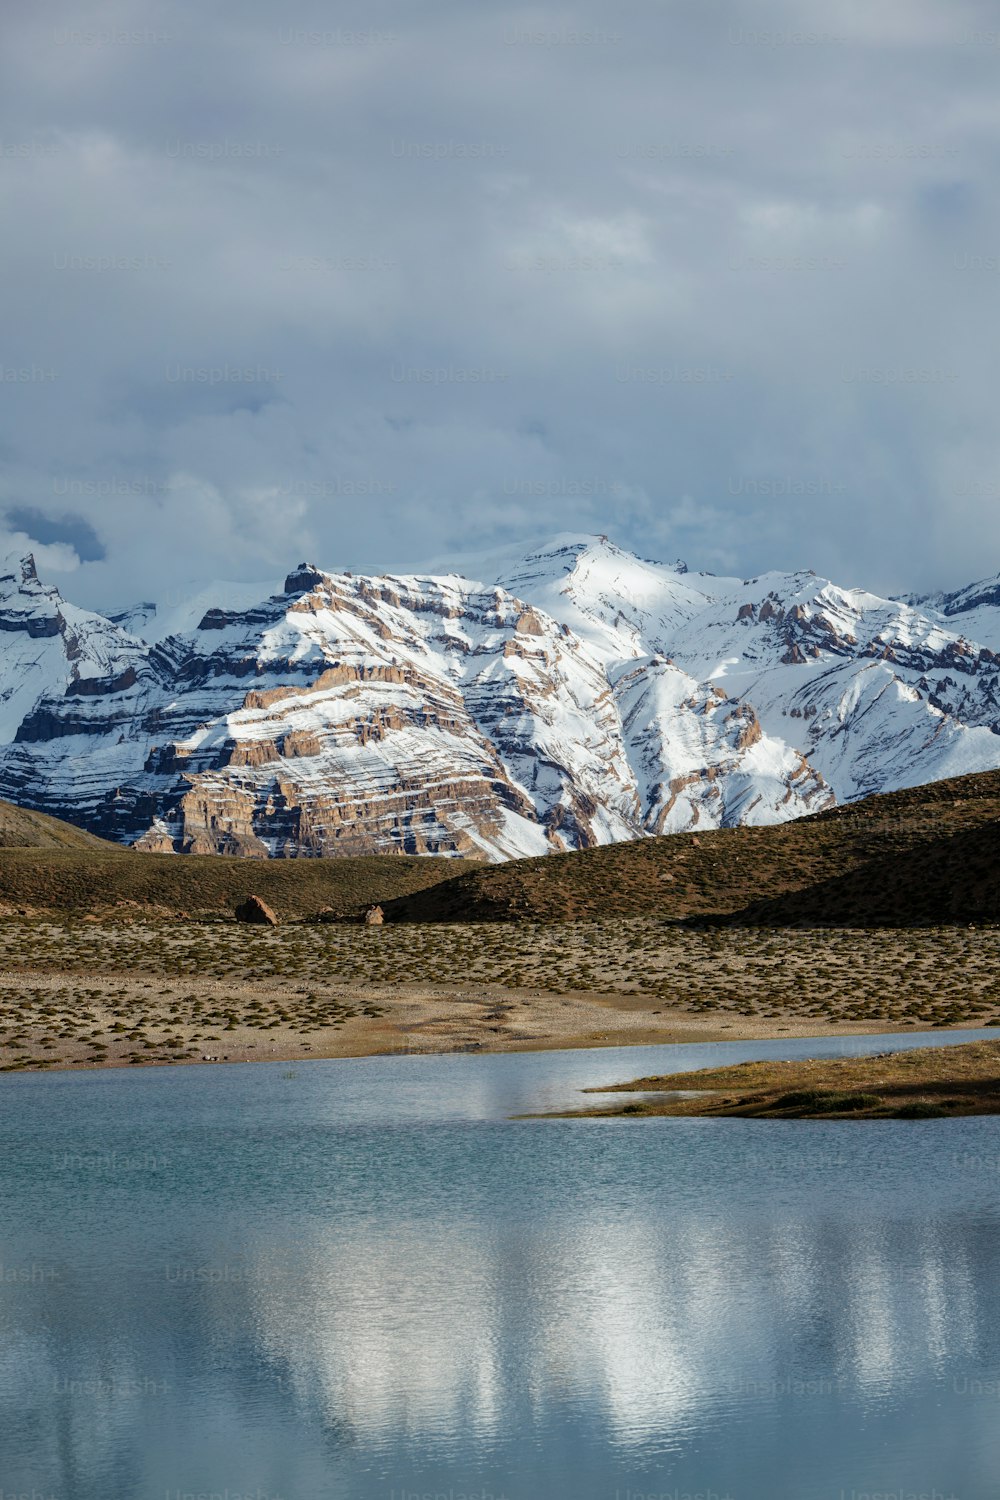 Himalayas mountains refelcting in mountain lake Dhankar Lake. Spiti Valley, Himachal Pradesh, India